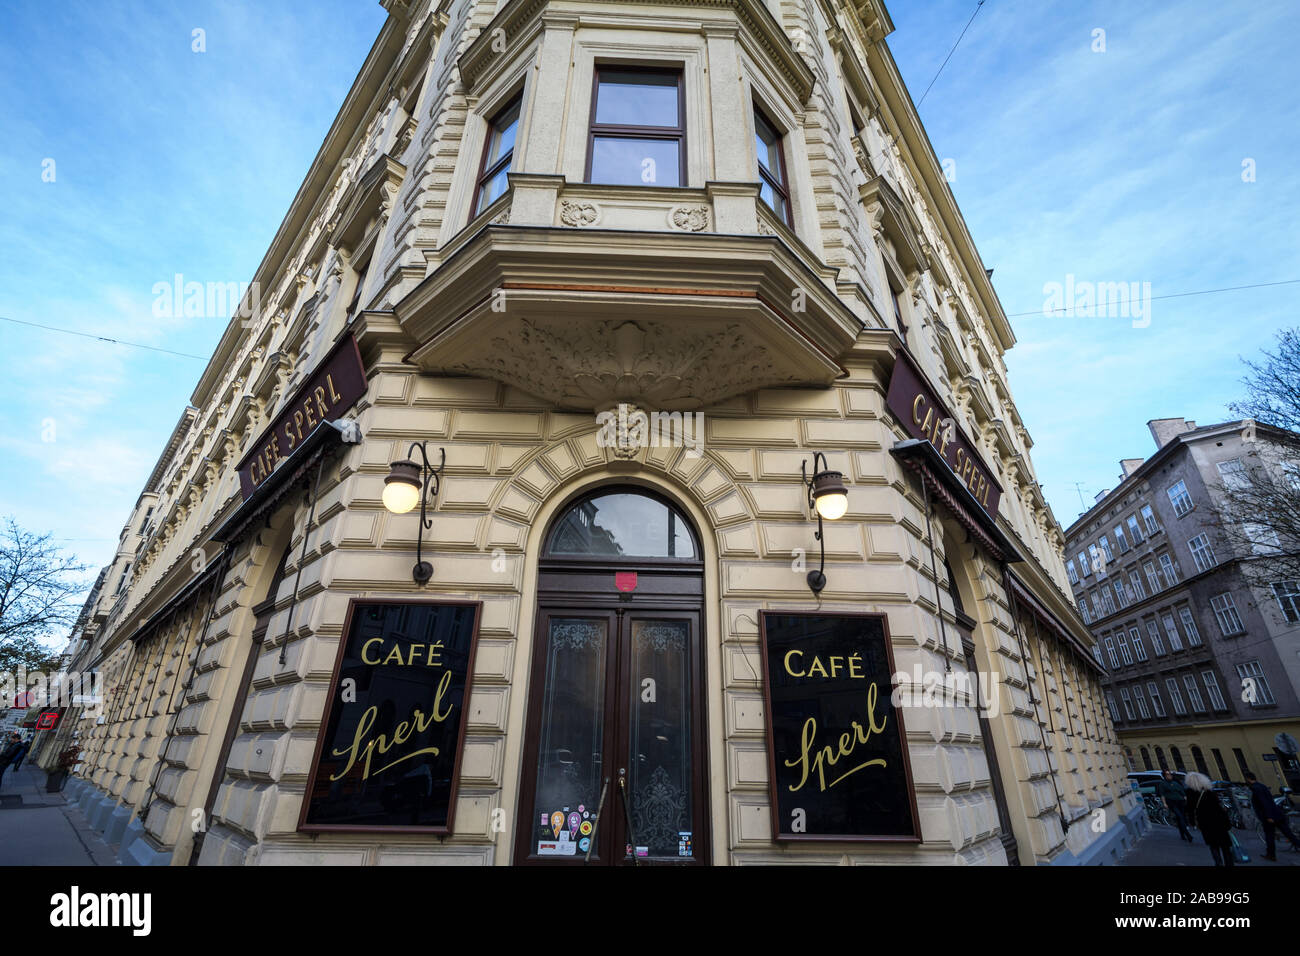 Vienne, Autriche - le 6 novembre 2019 : Entrée de la Cafe Sperl, une entrée d'un baroque typique Wiener Kaffeehaus viennois, Coffee House, une icône de t Banque D'Images